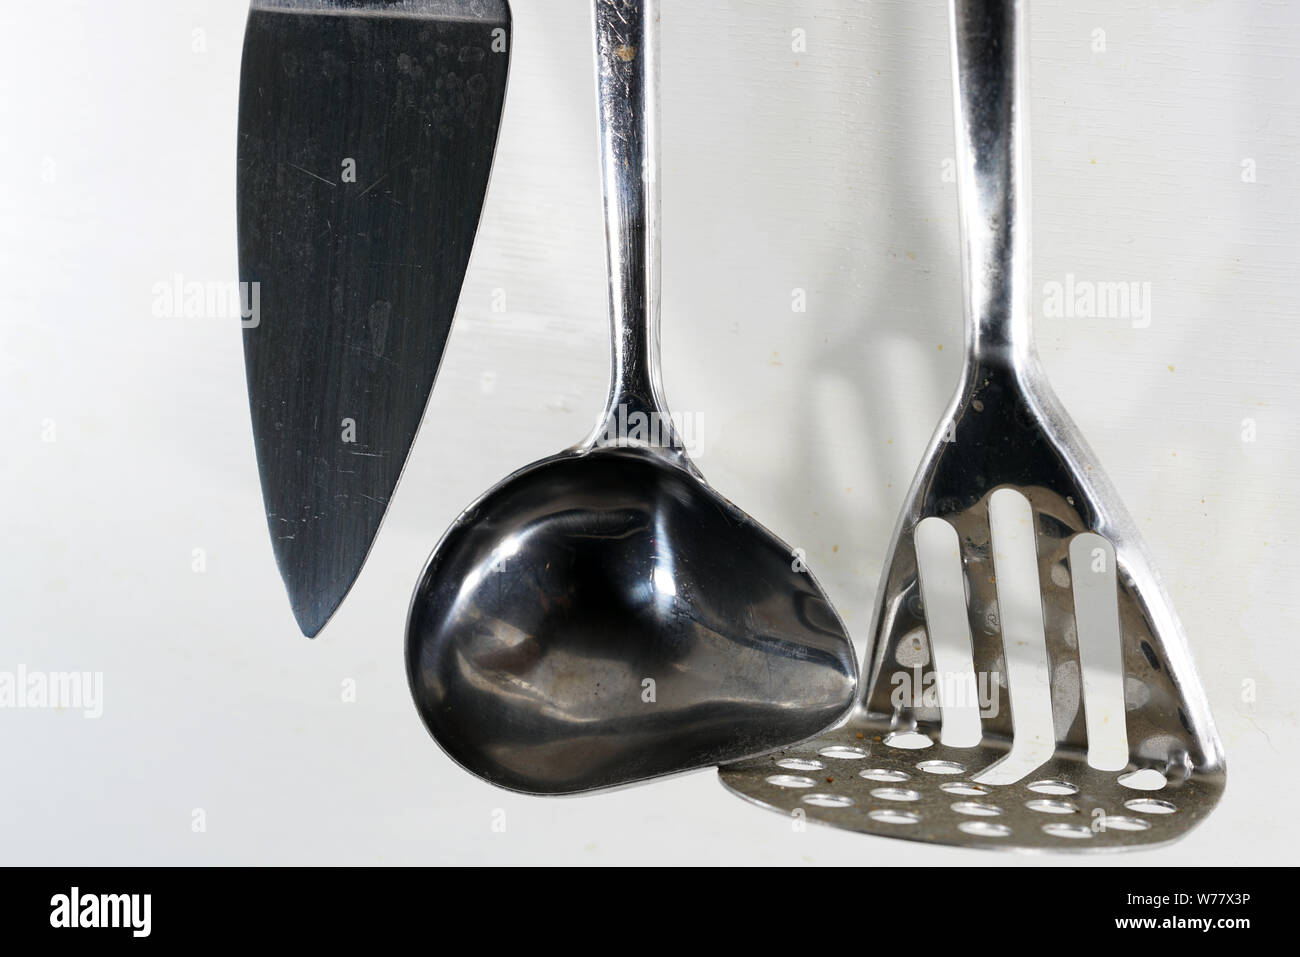 Una cuchara, un cucharón o cuchara, es parte del aparador y se utiliza  principalmente para relleno de sopa u otros líquidos Fotografía de stock -  Alamy